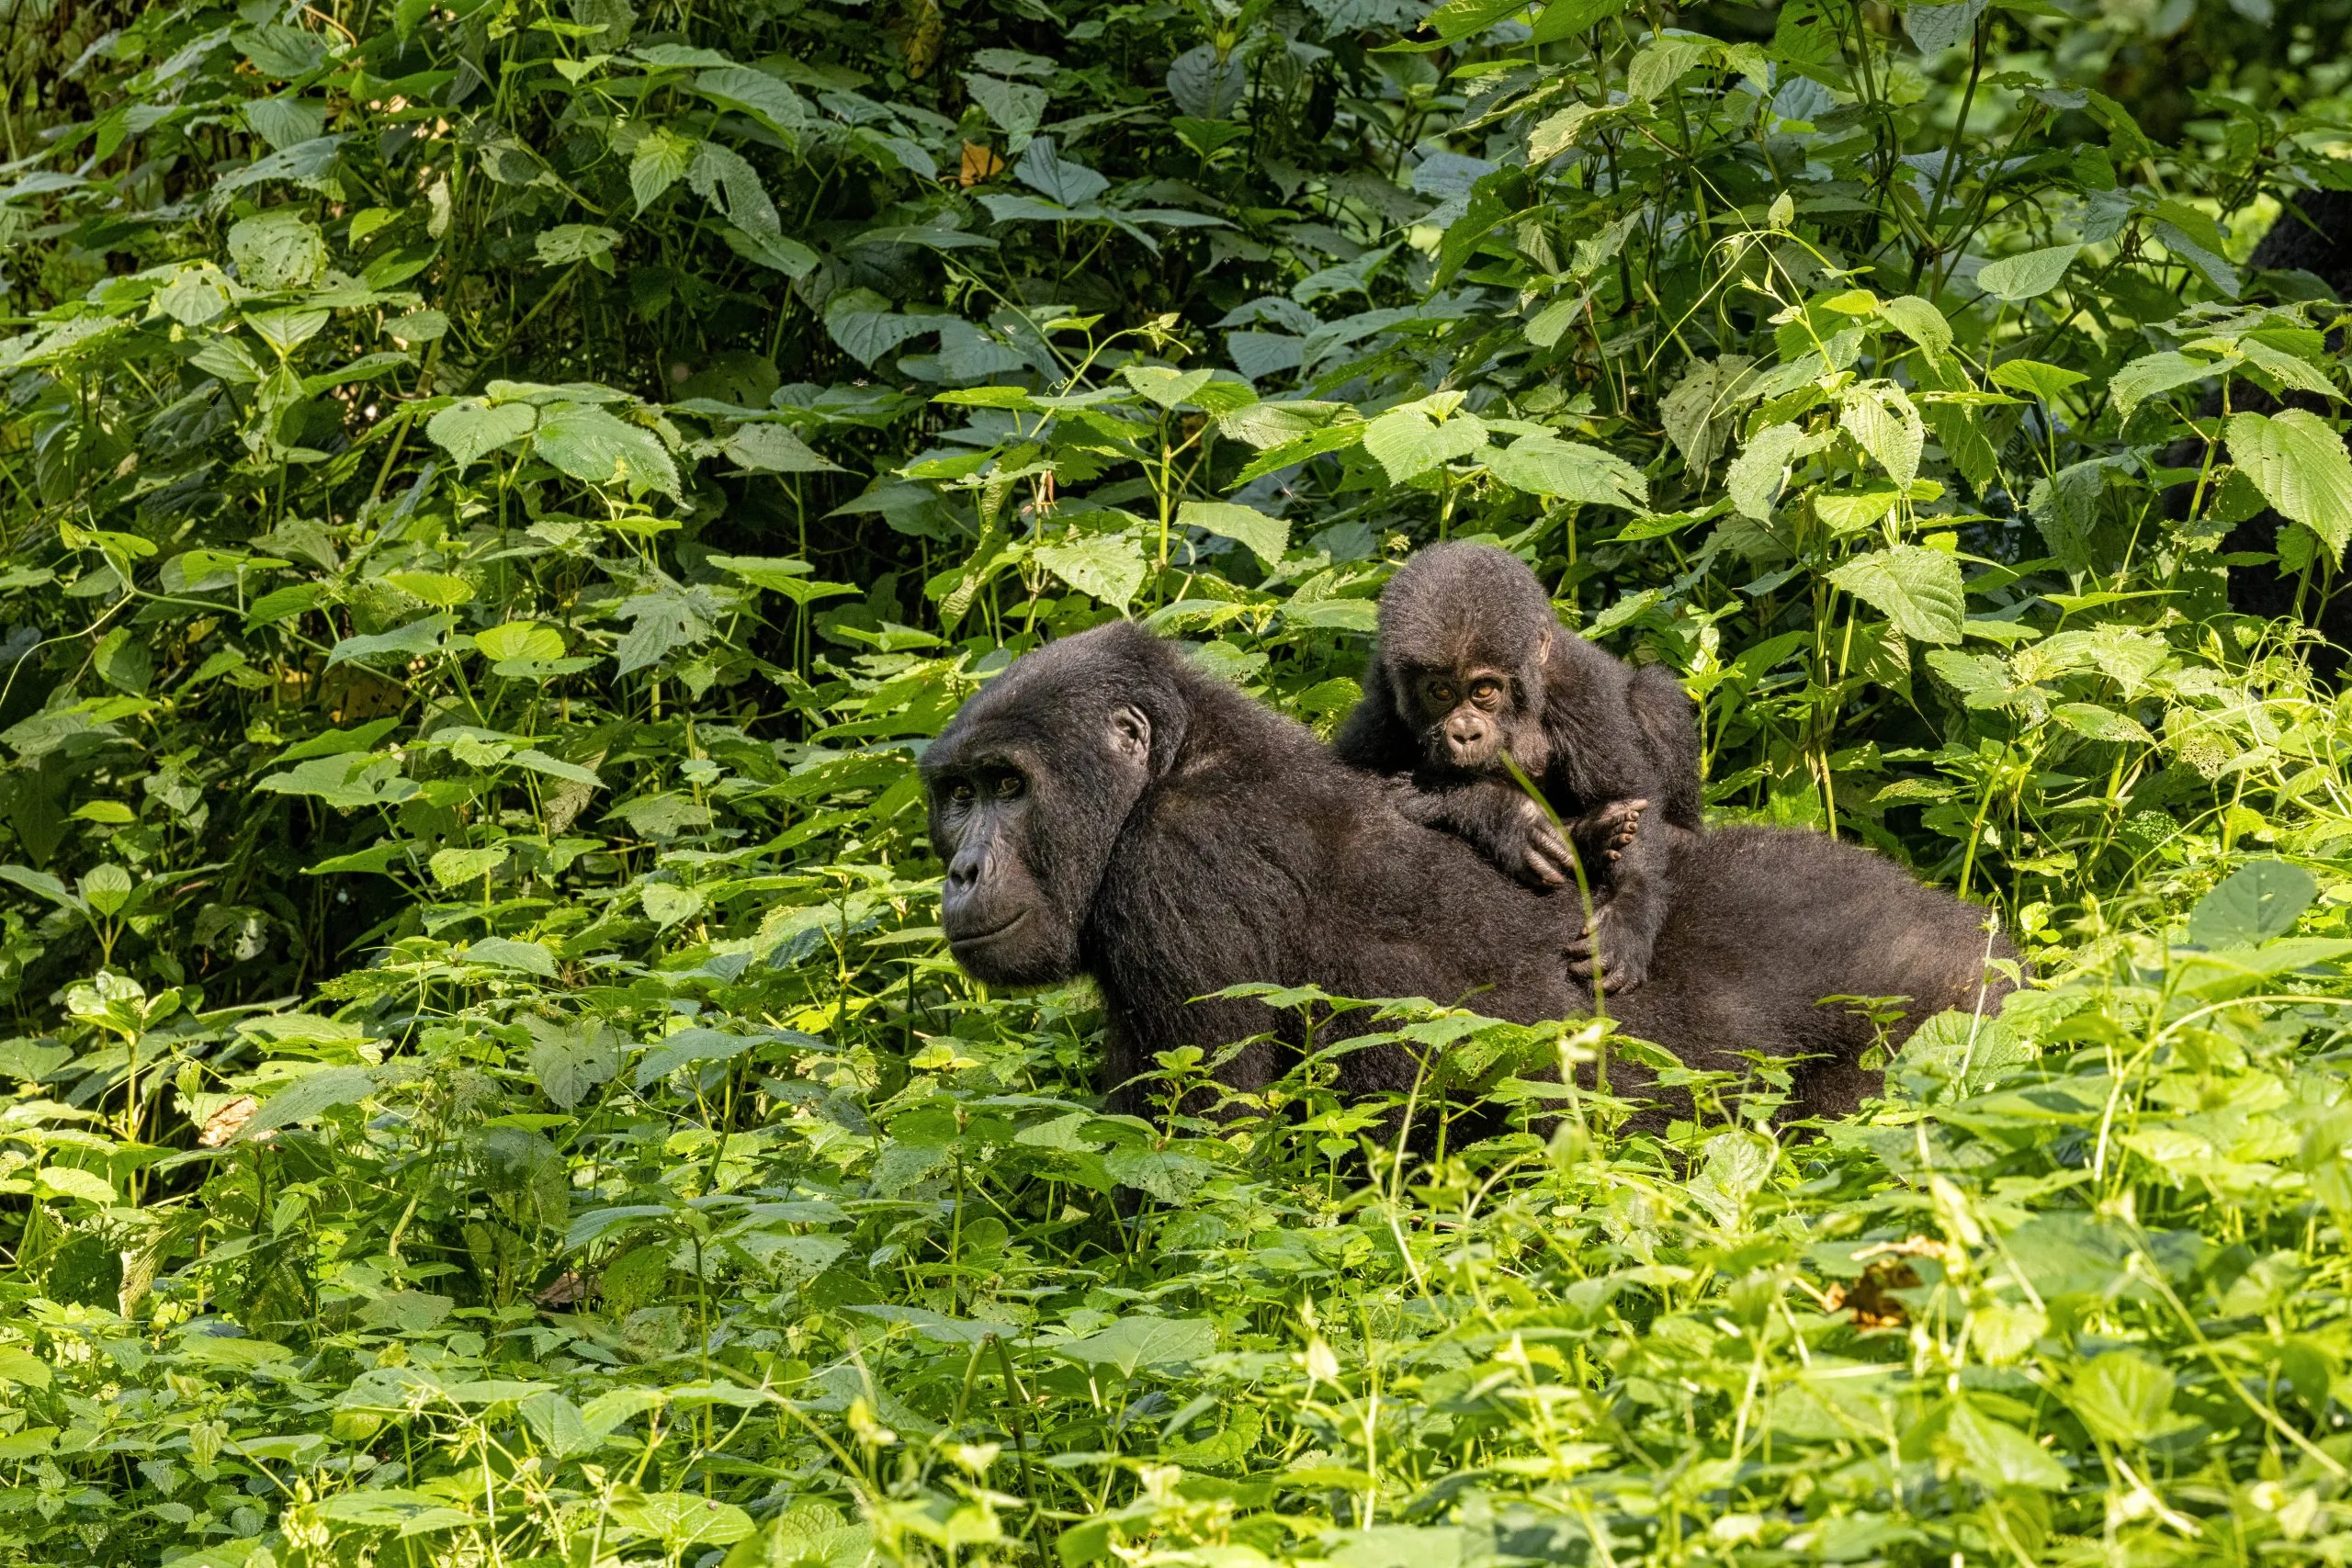 Femmina adulta di gorilla con il piccolo, Gorilla beringei beringei, nel fogliame lussureggiante della foresta impenetrabile di Bwindi, in Uganda. Membri del gruppo di assuefazione della famiglia Muyambi del programma di conservazione